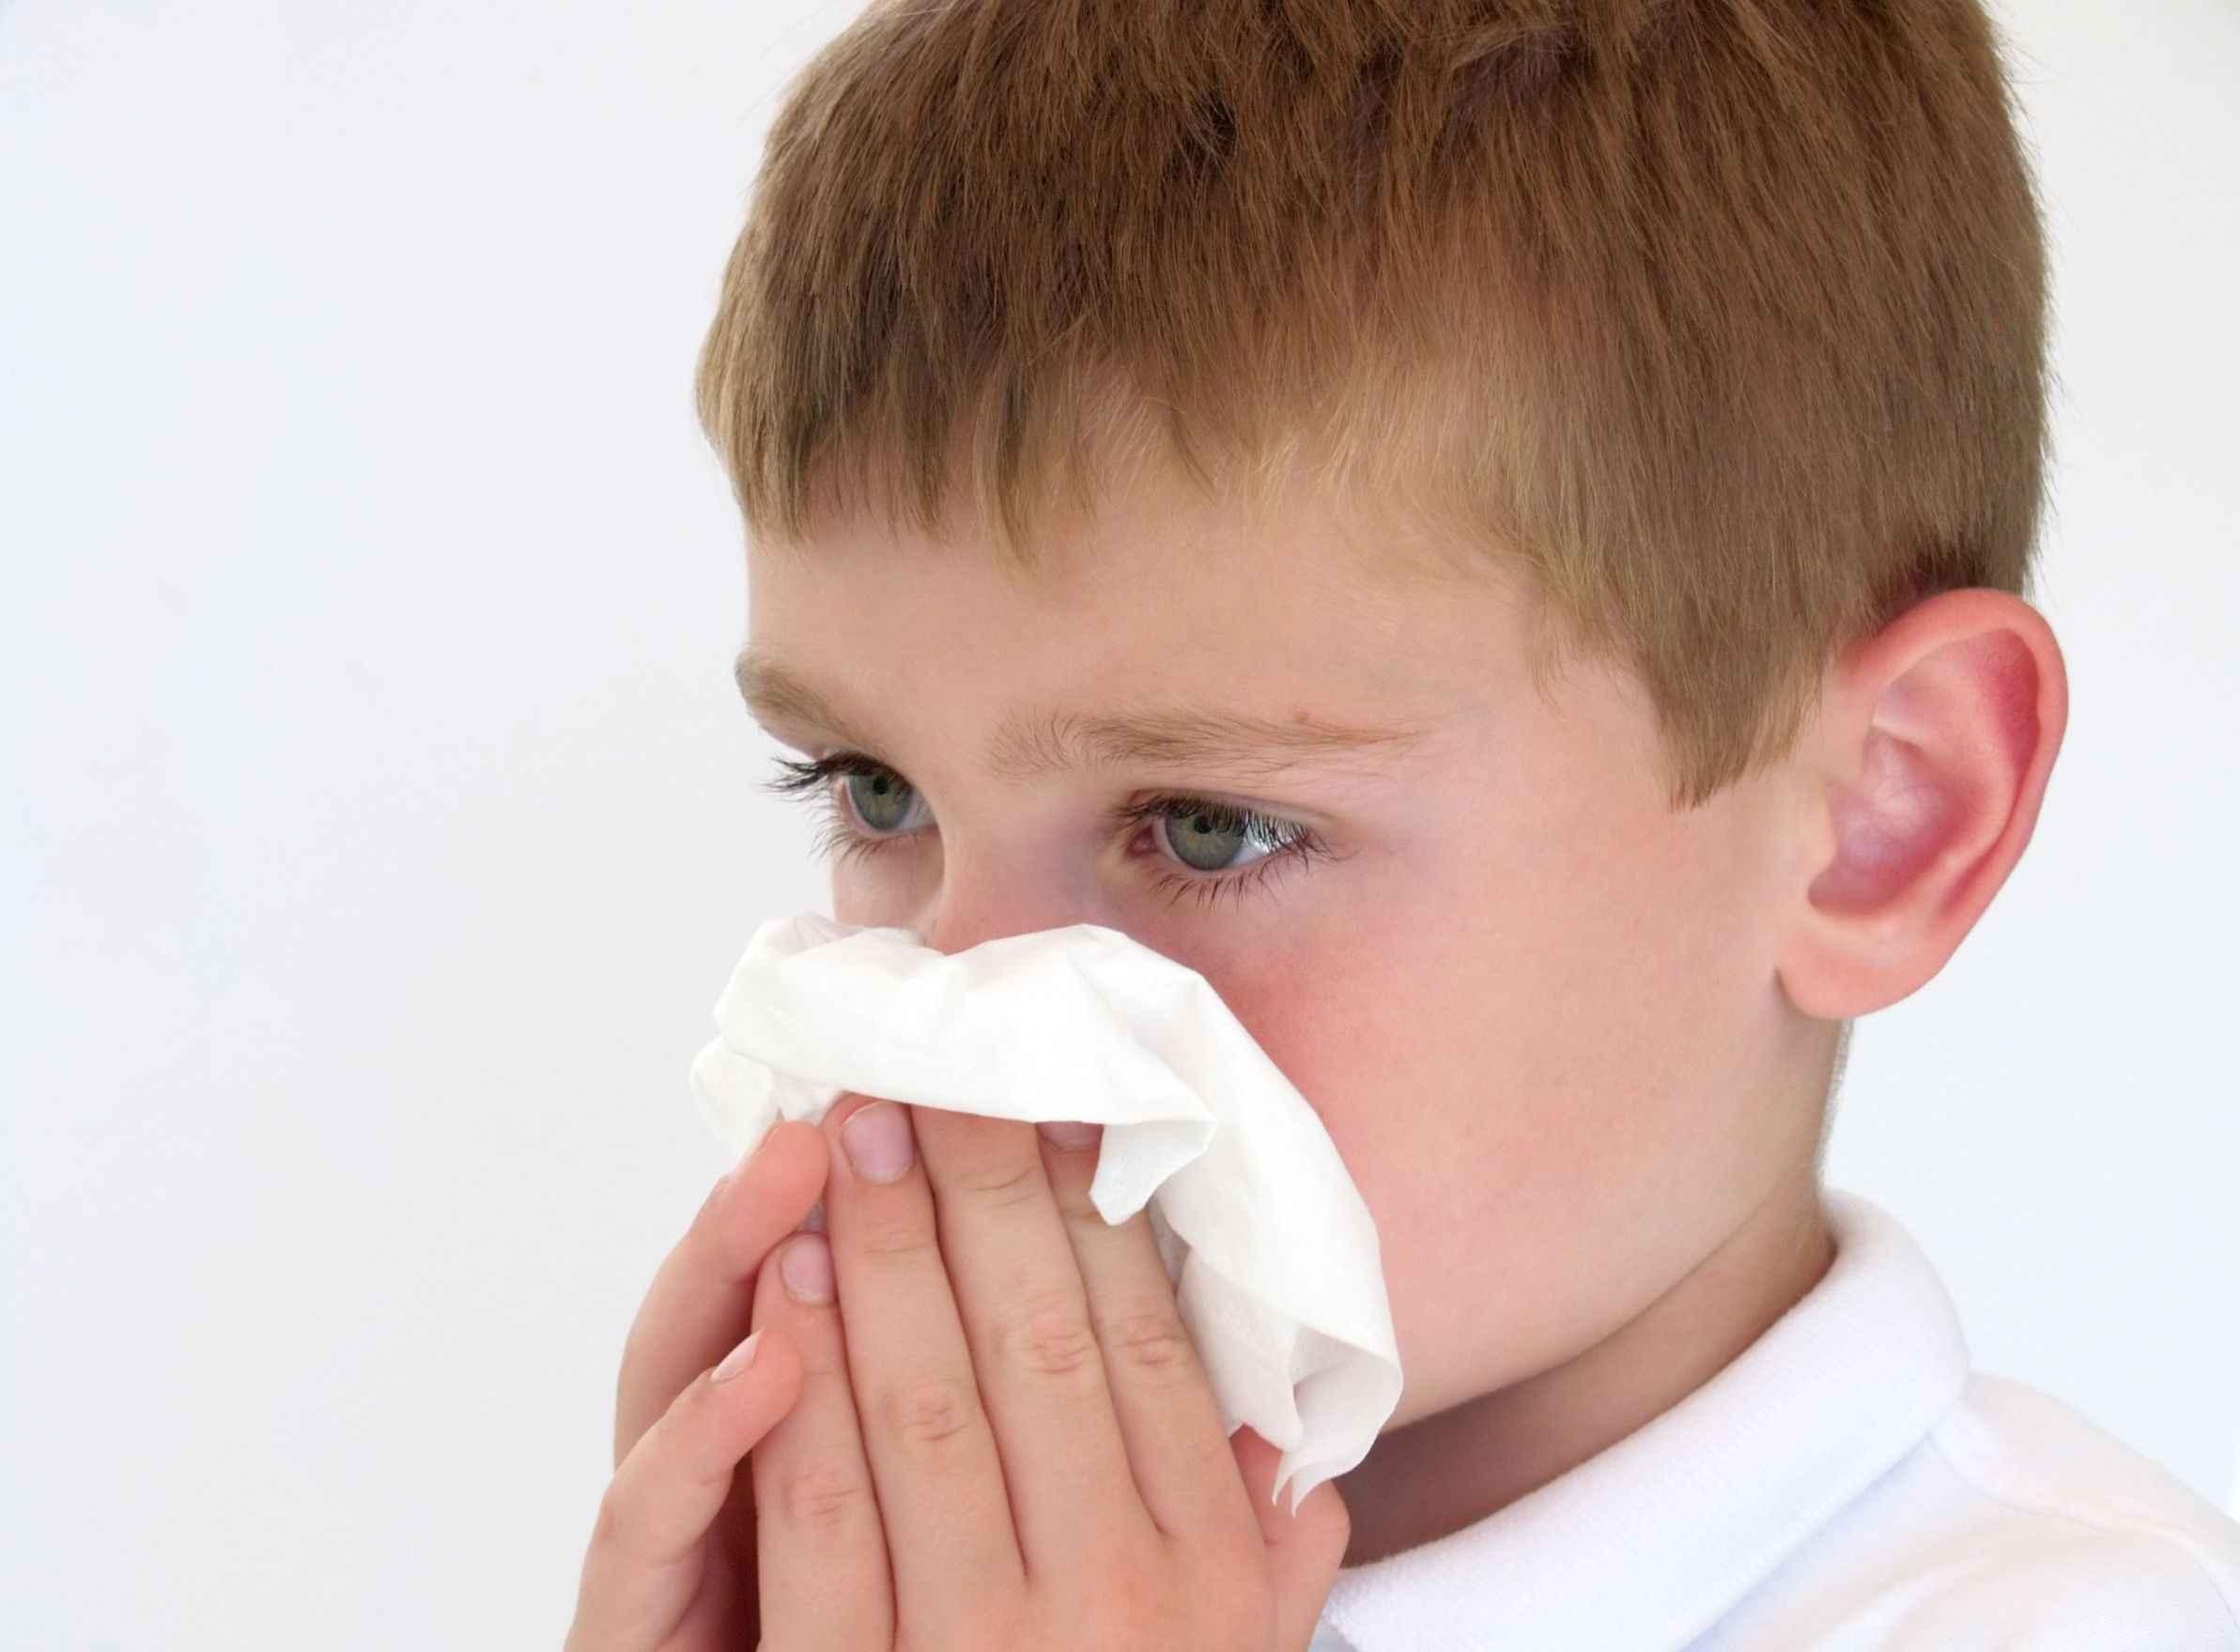 Заложенность носа у ребенка 5 лет. Ребенок с носовым платком. Кашель насморк. Сморкается в платок. Вытирает нос.